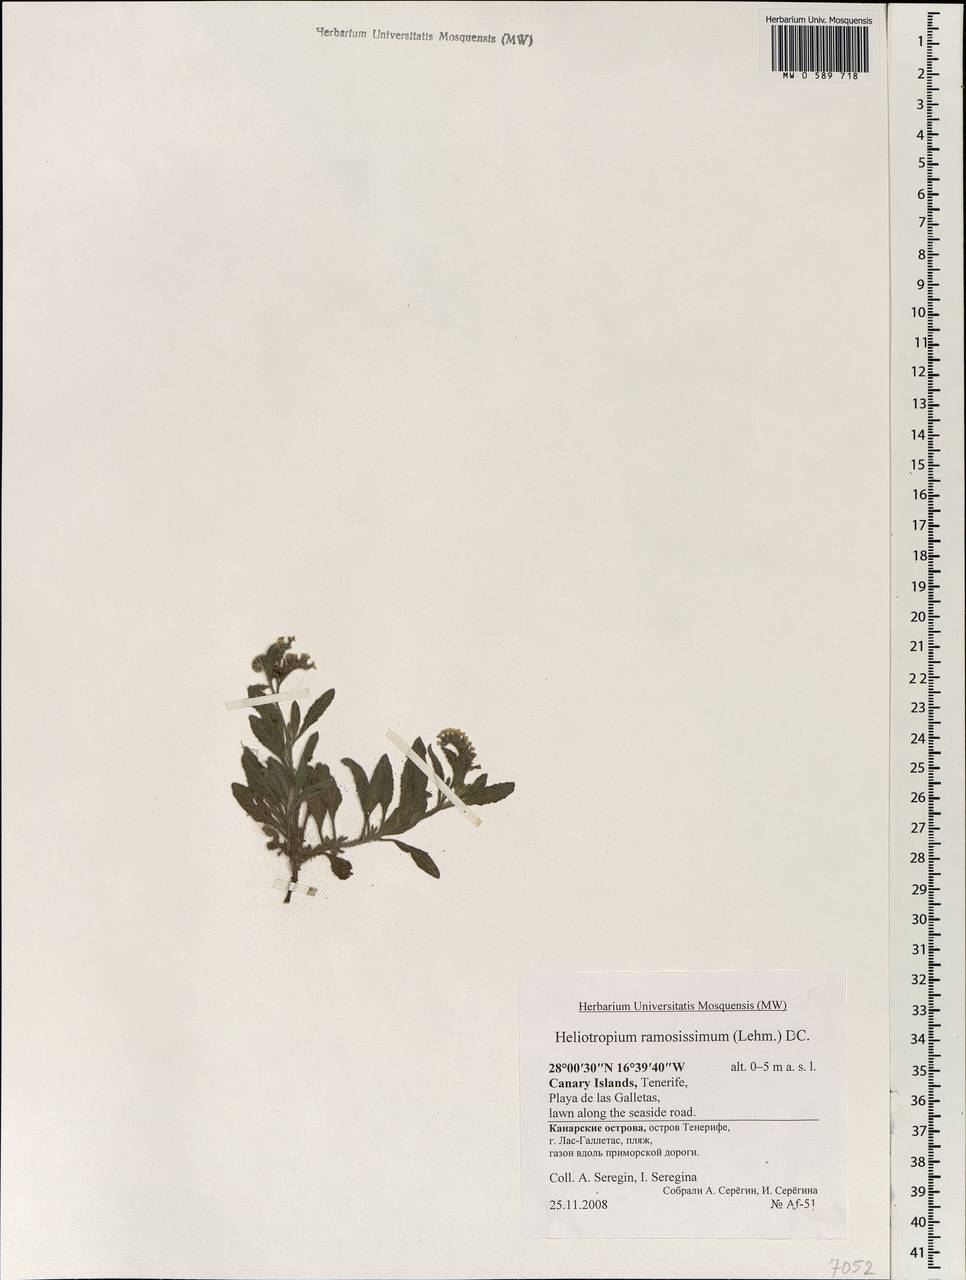 Heliotropium ramosissimum (Lehm.) Sieber ex DC., Africa (AFR) (Spain)